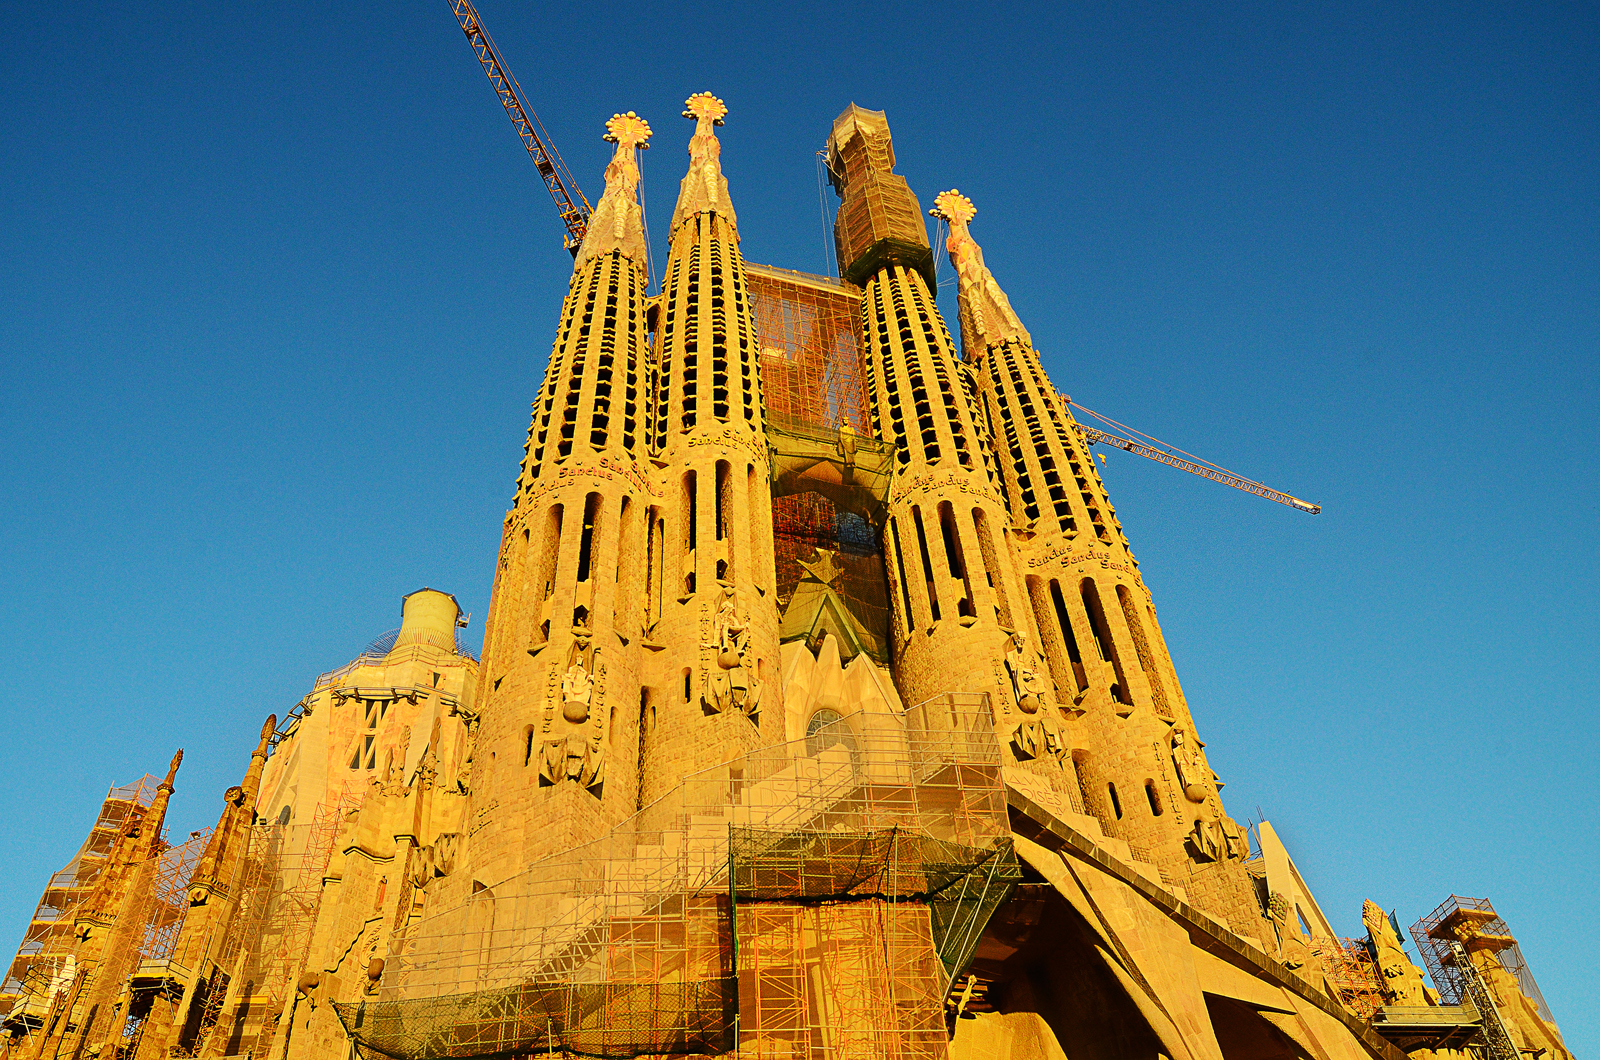 Sagrada Familia Basilica in Barcelona by Barcelona Photoblog